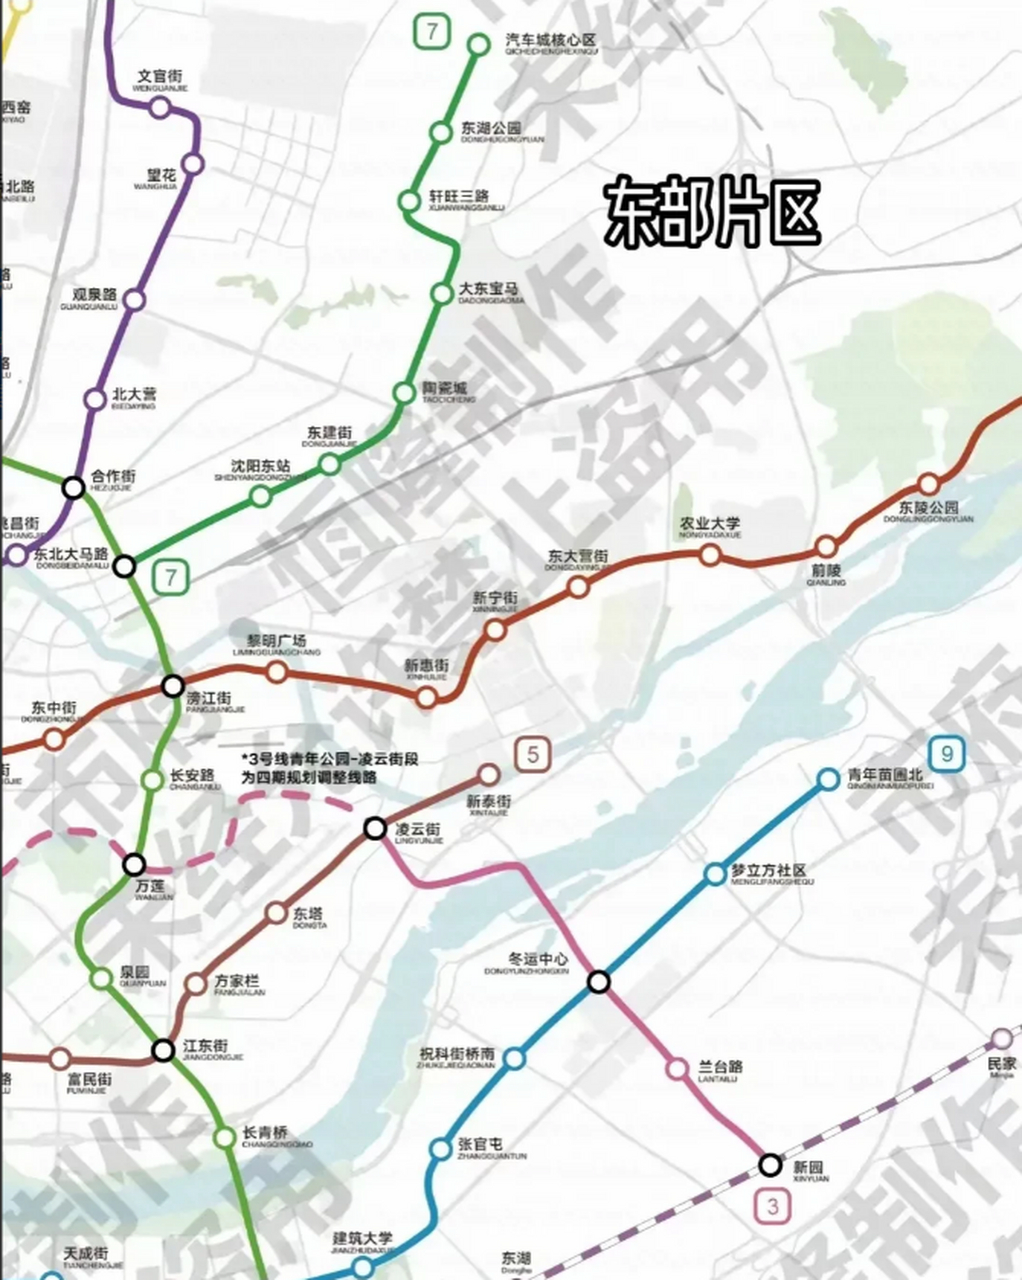 沈阳地铁七号线2021图片